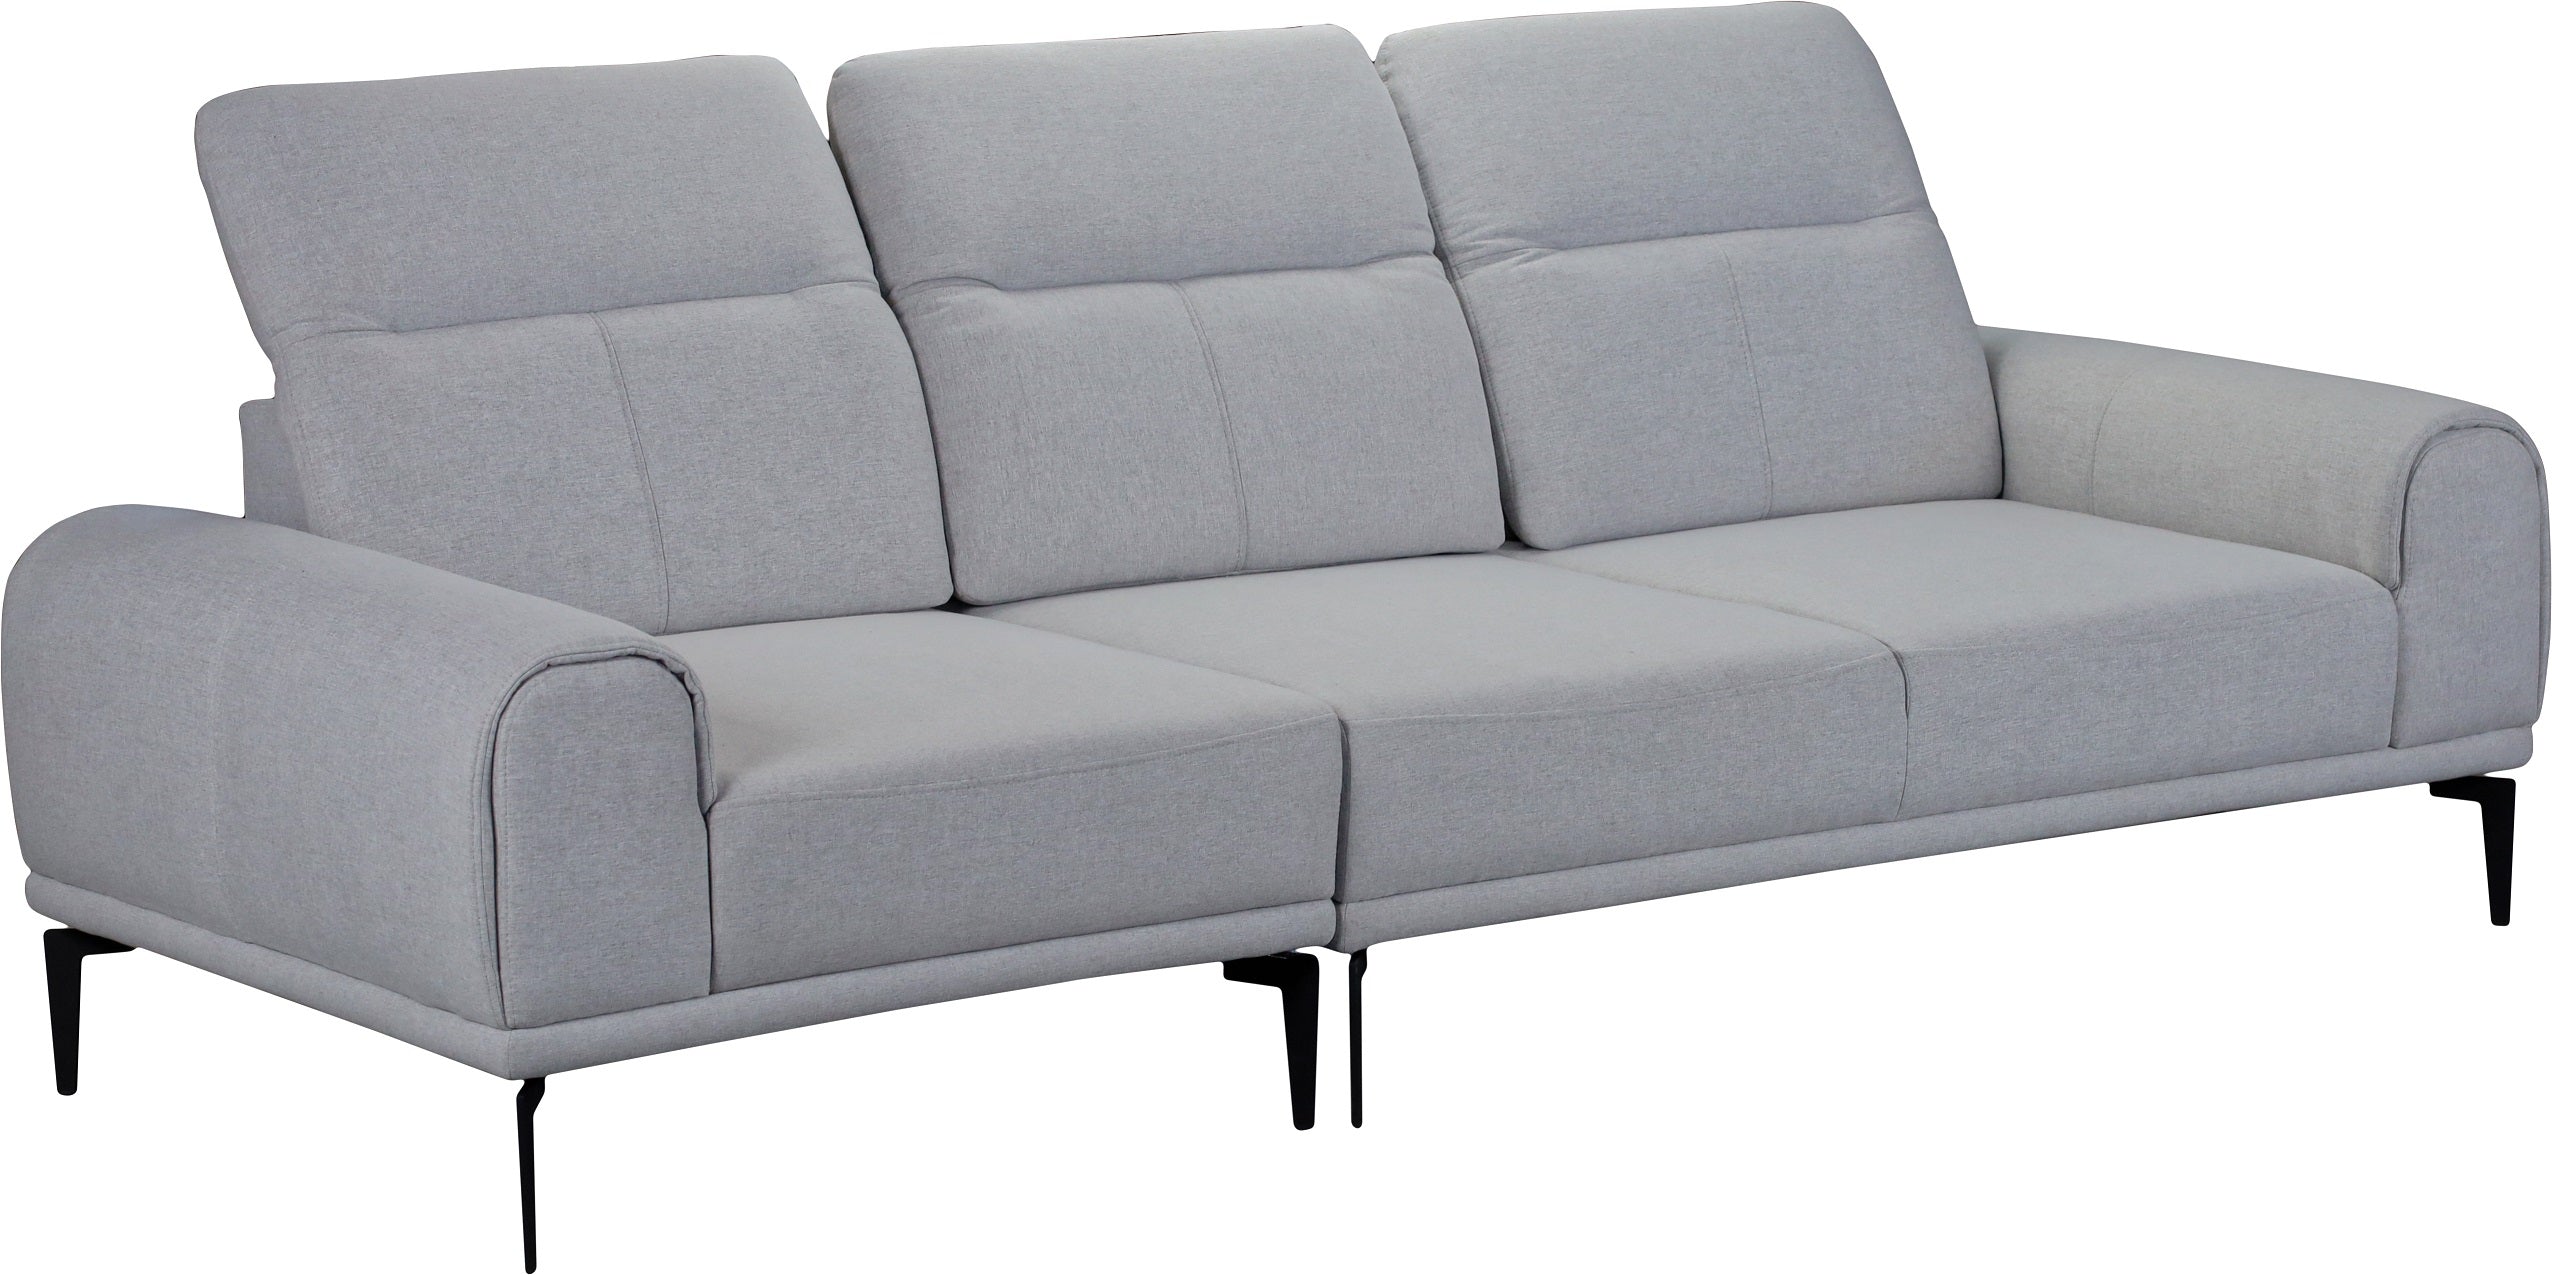 3-seater sofa-Oslo